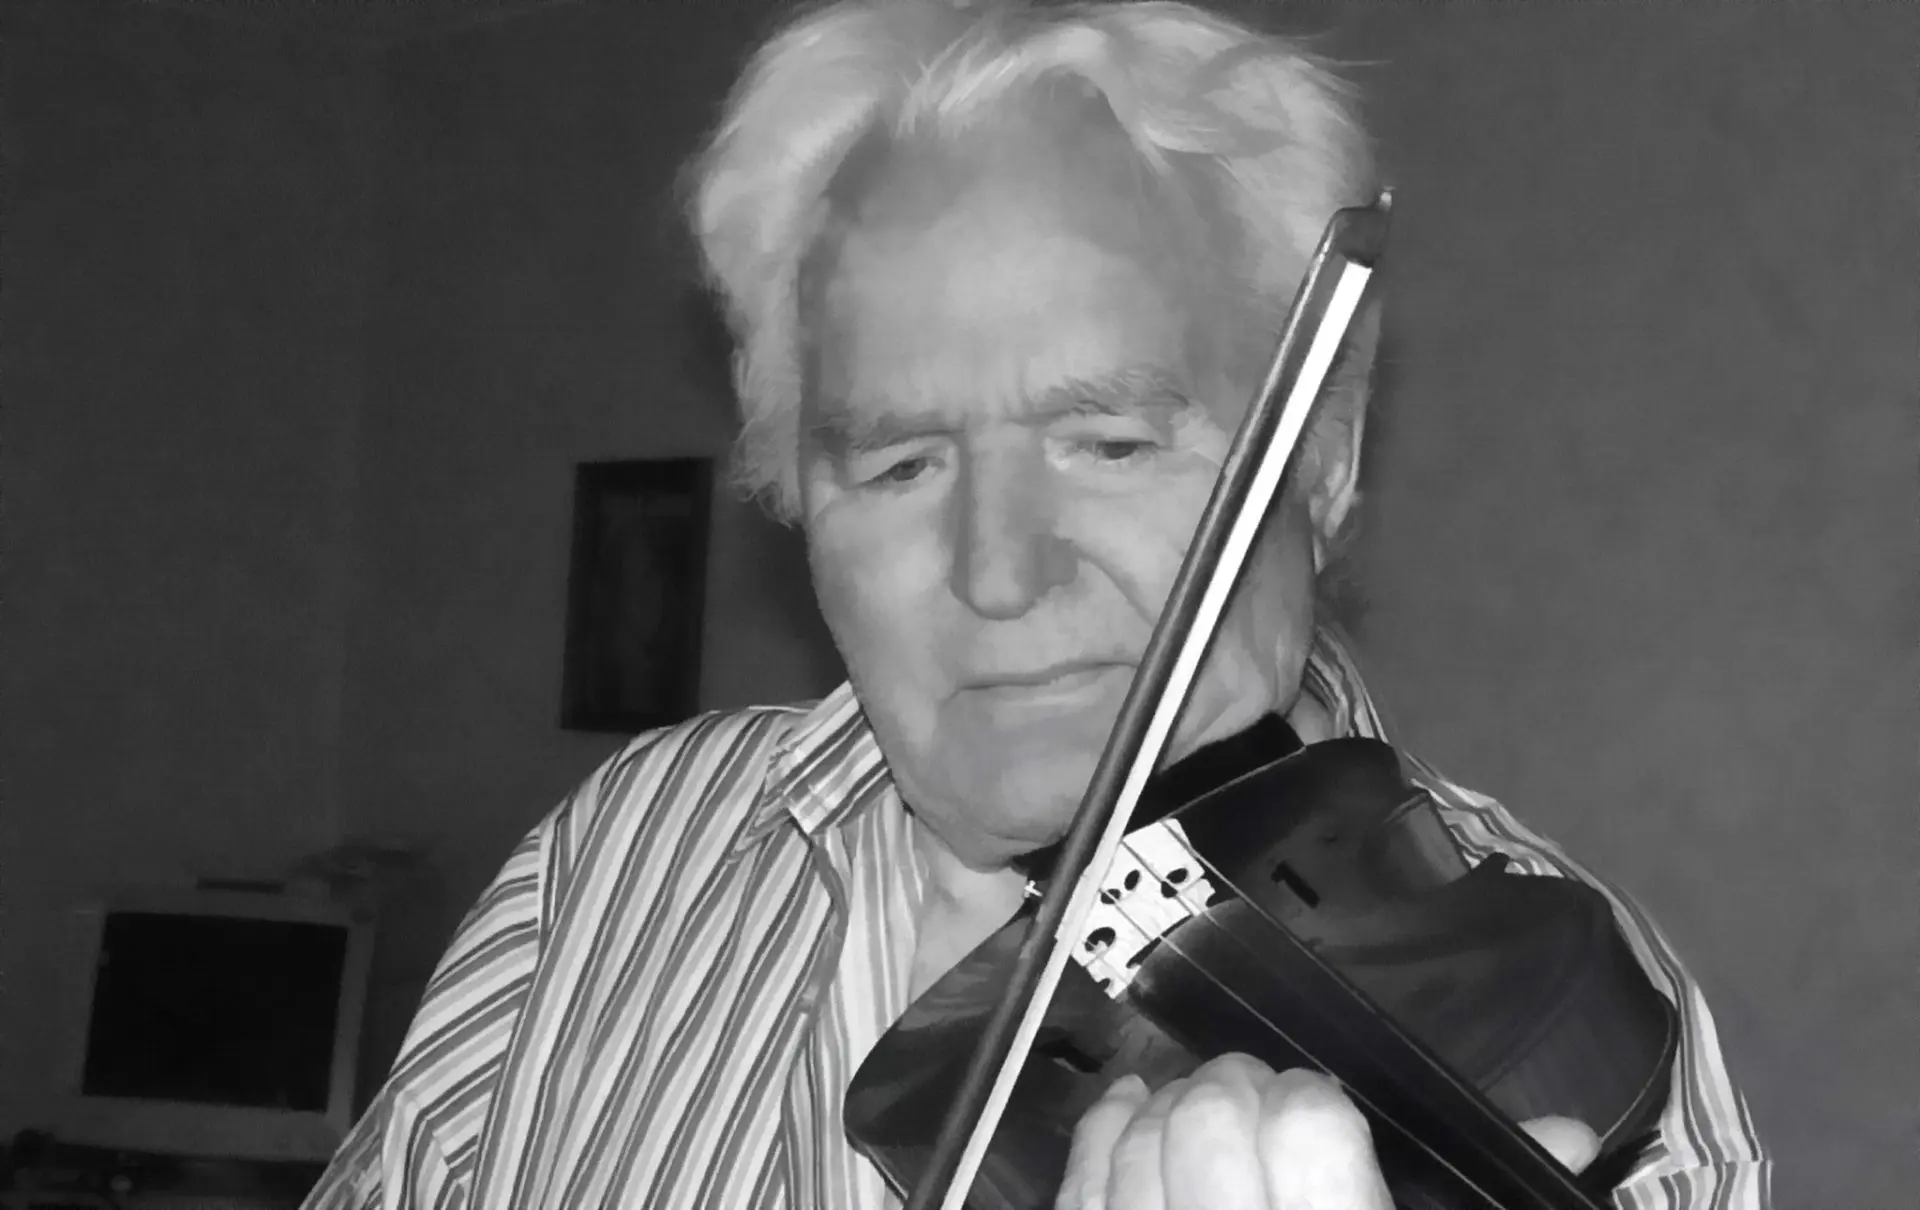 В нашей семье все красиво пели... Артур Герман на своей скрипке играет "Аве Марию" в честь памяти племянницы Анны Герман, 2011 год, Германия